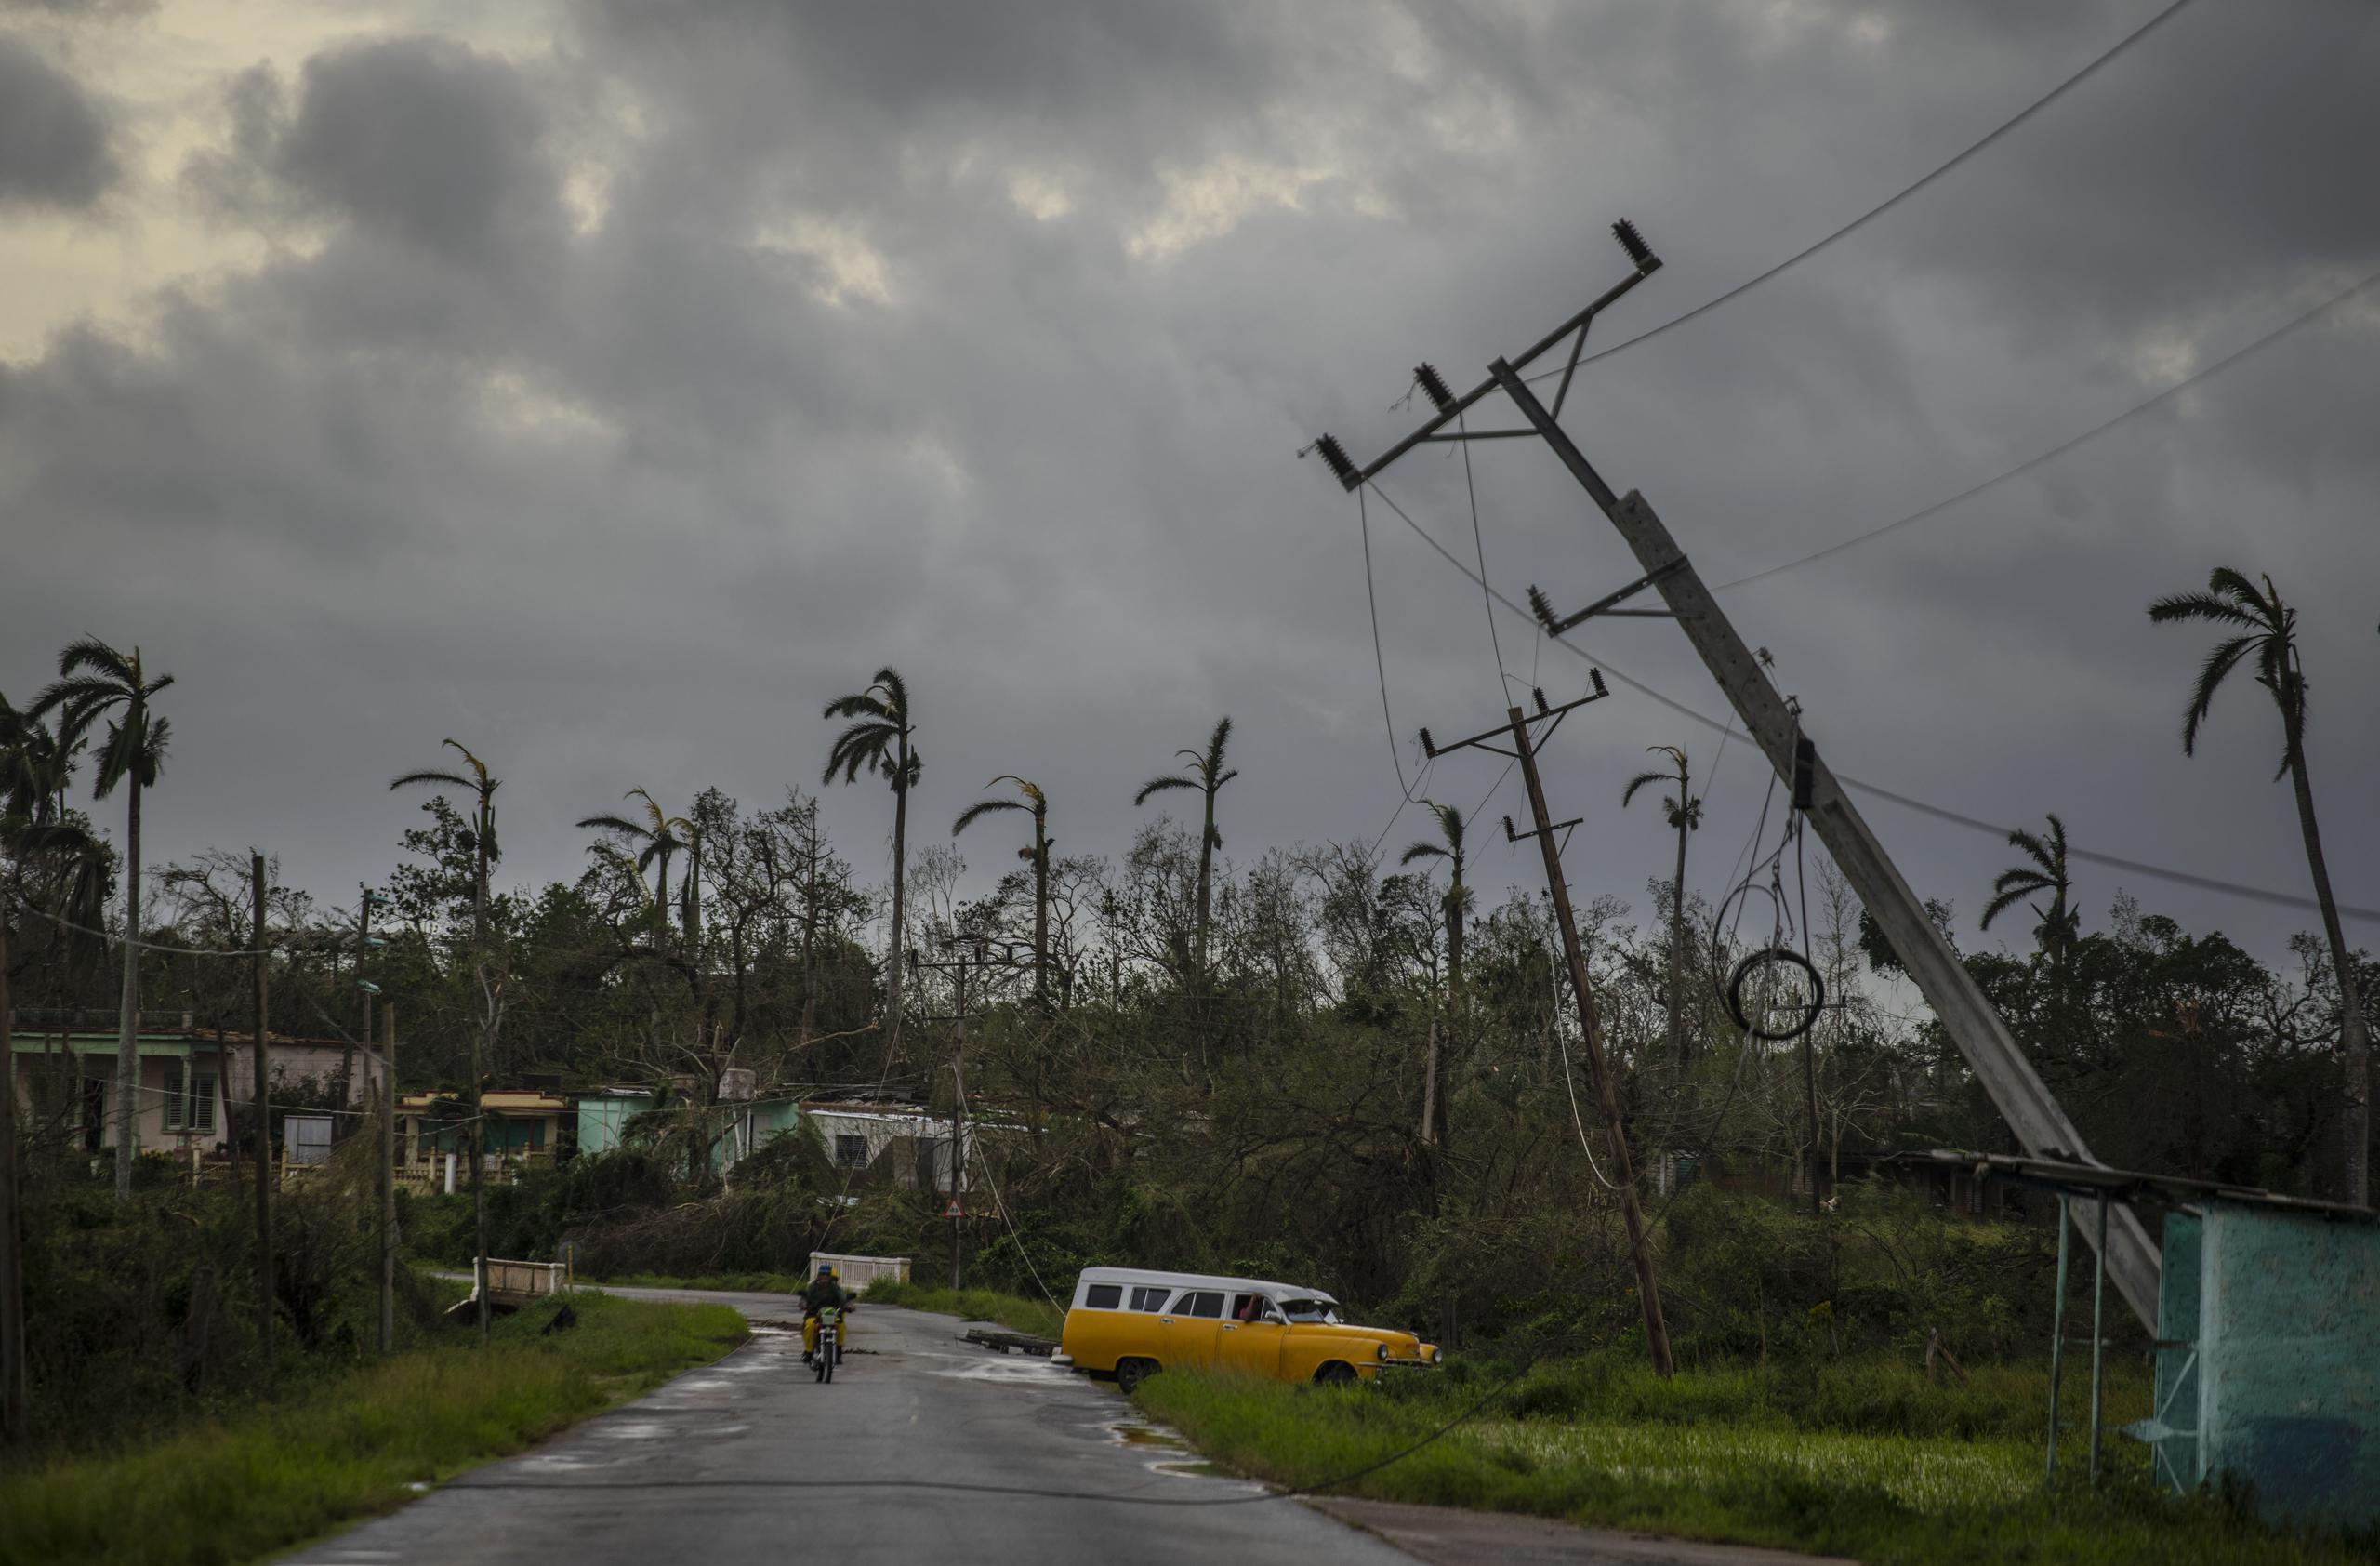 Durante más de 10 horas entre la noche del martes y la madrugada del miércoles, Cuba -con 11 millones de habitantes- quedó en total oscuridad al tiempo que el huracán Ian se alejaba tras haber azotado con sus vientos el occidente y centro durante toda la víspera.